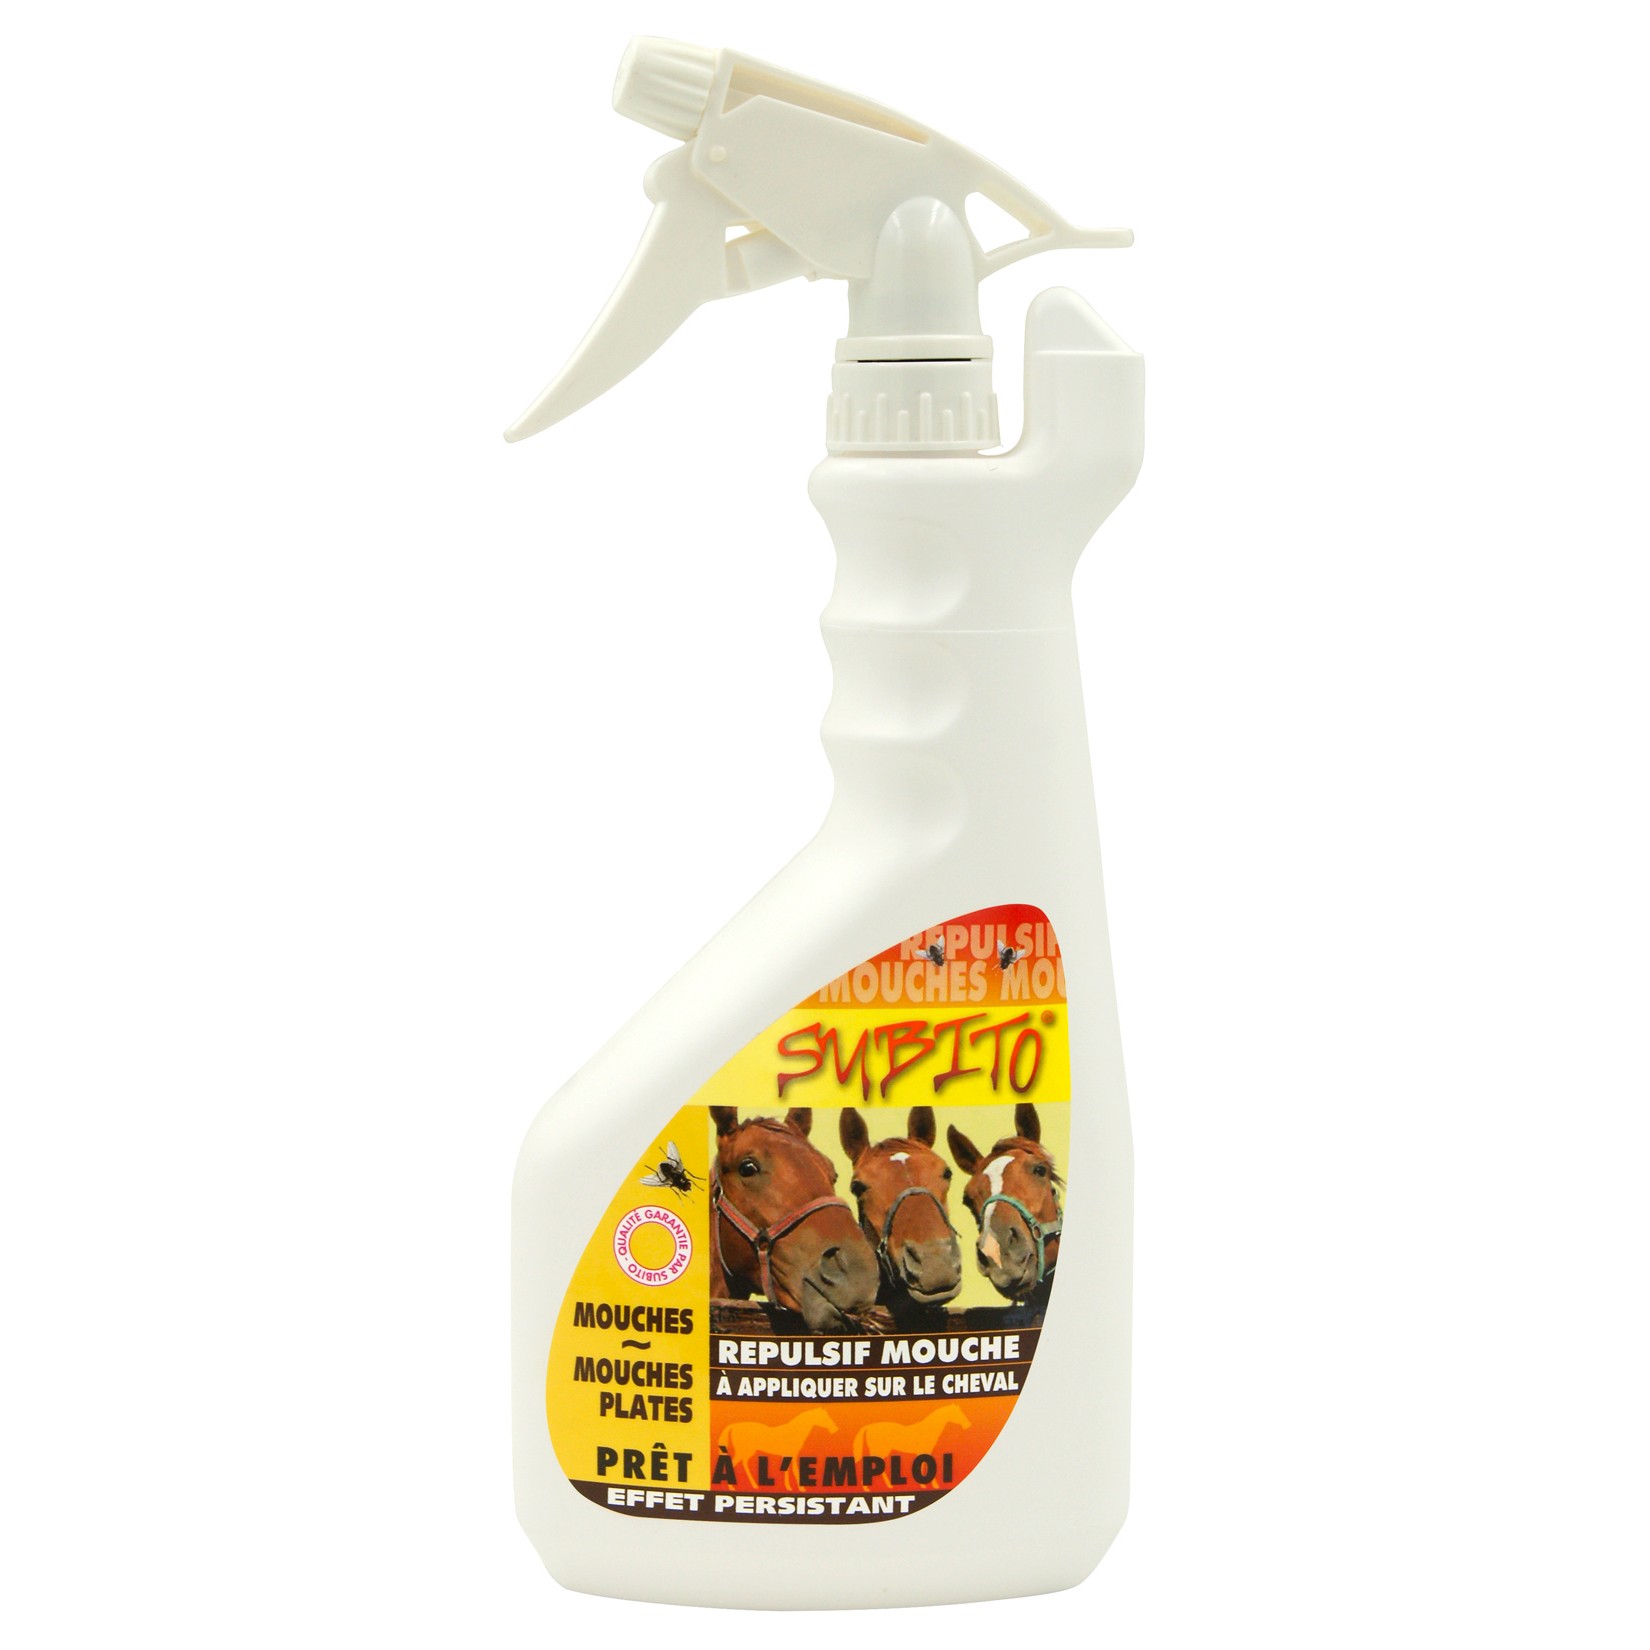 Répulsif anti-mouches, mouches plates, moustiques pour cheval 750ml Subito | Insecticide Antinuisible Qualité Professionnelle